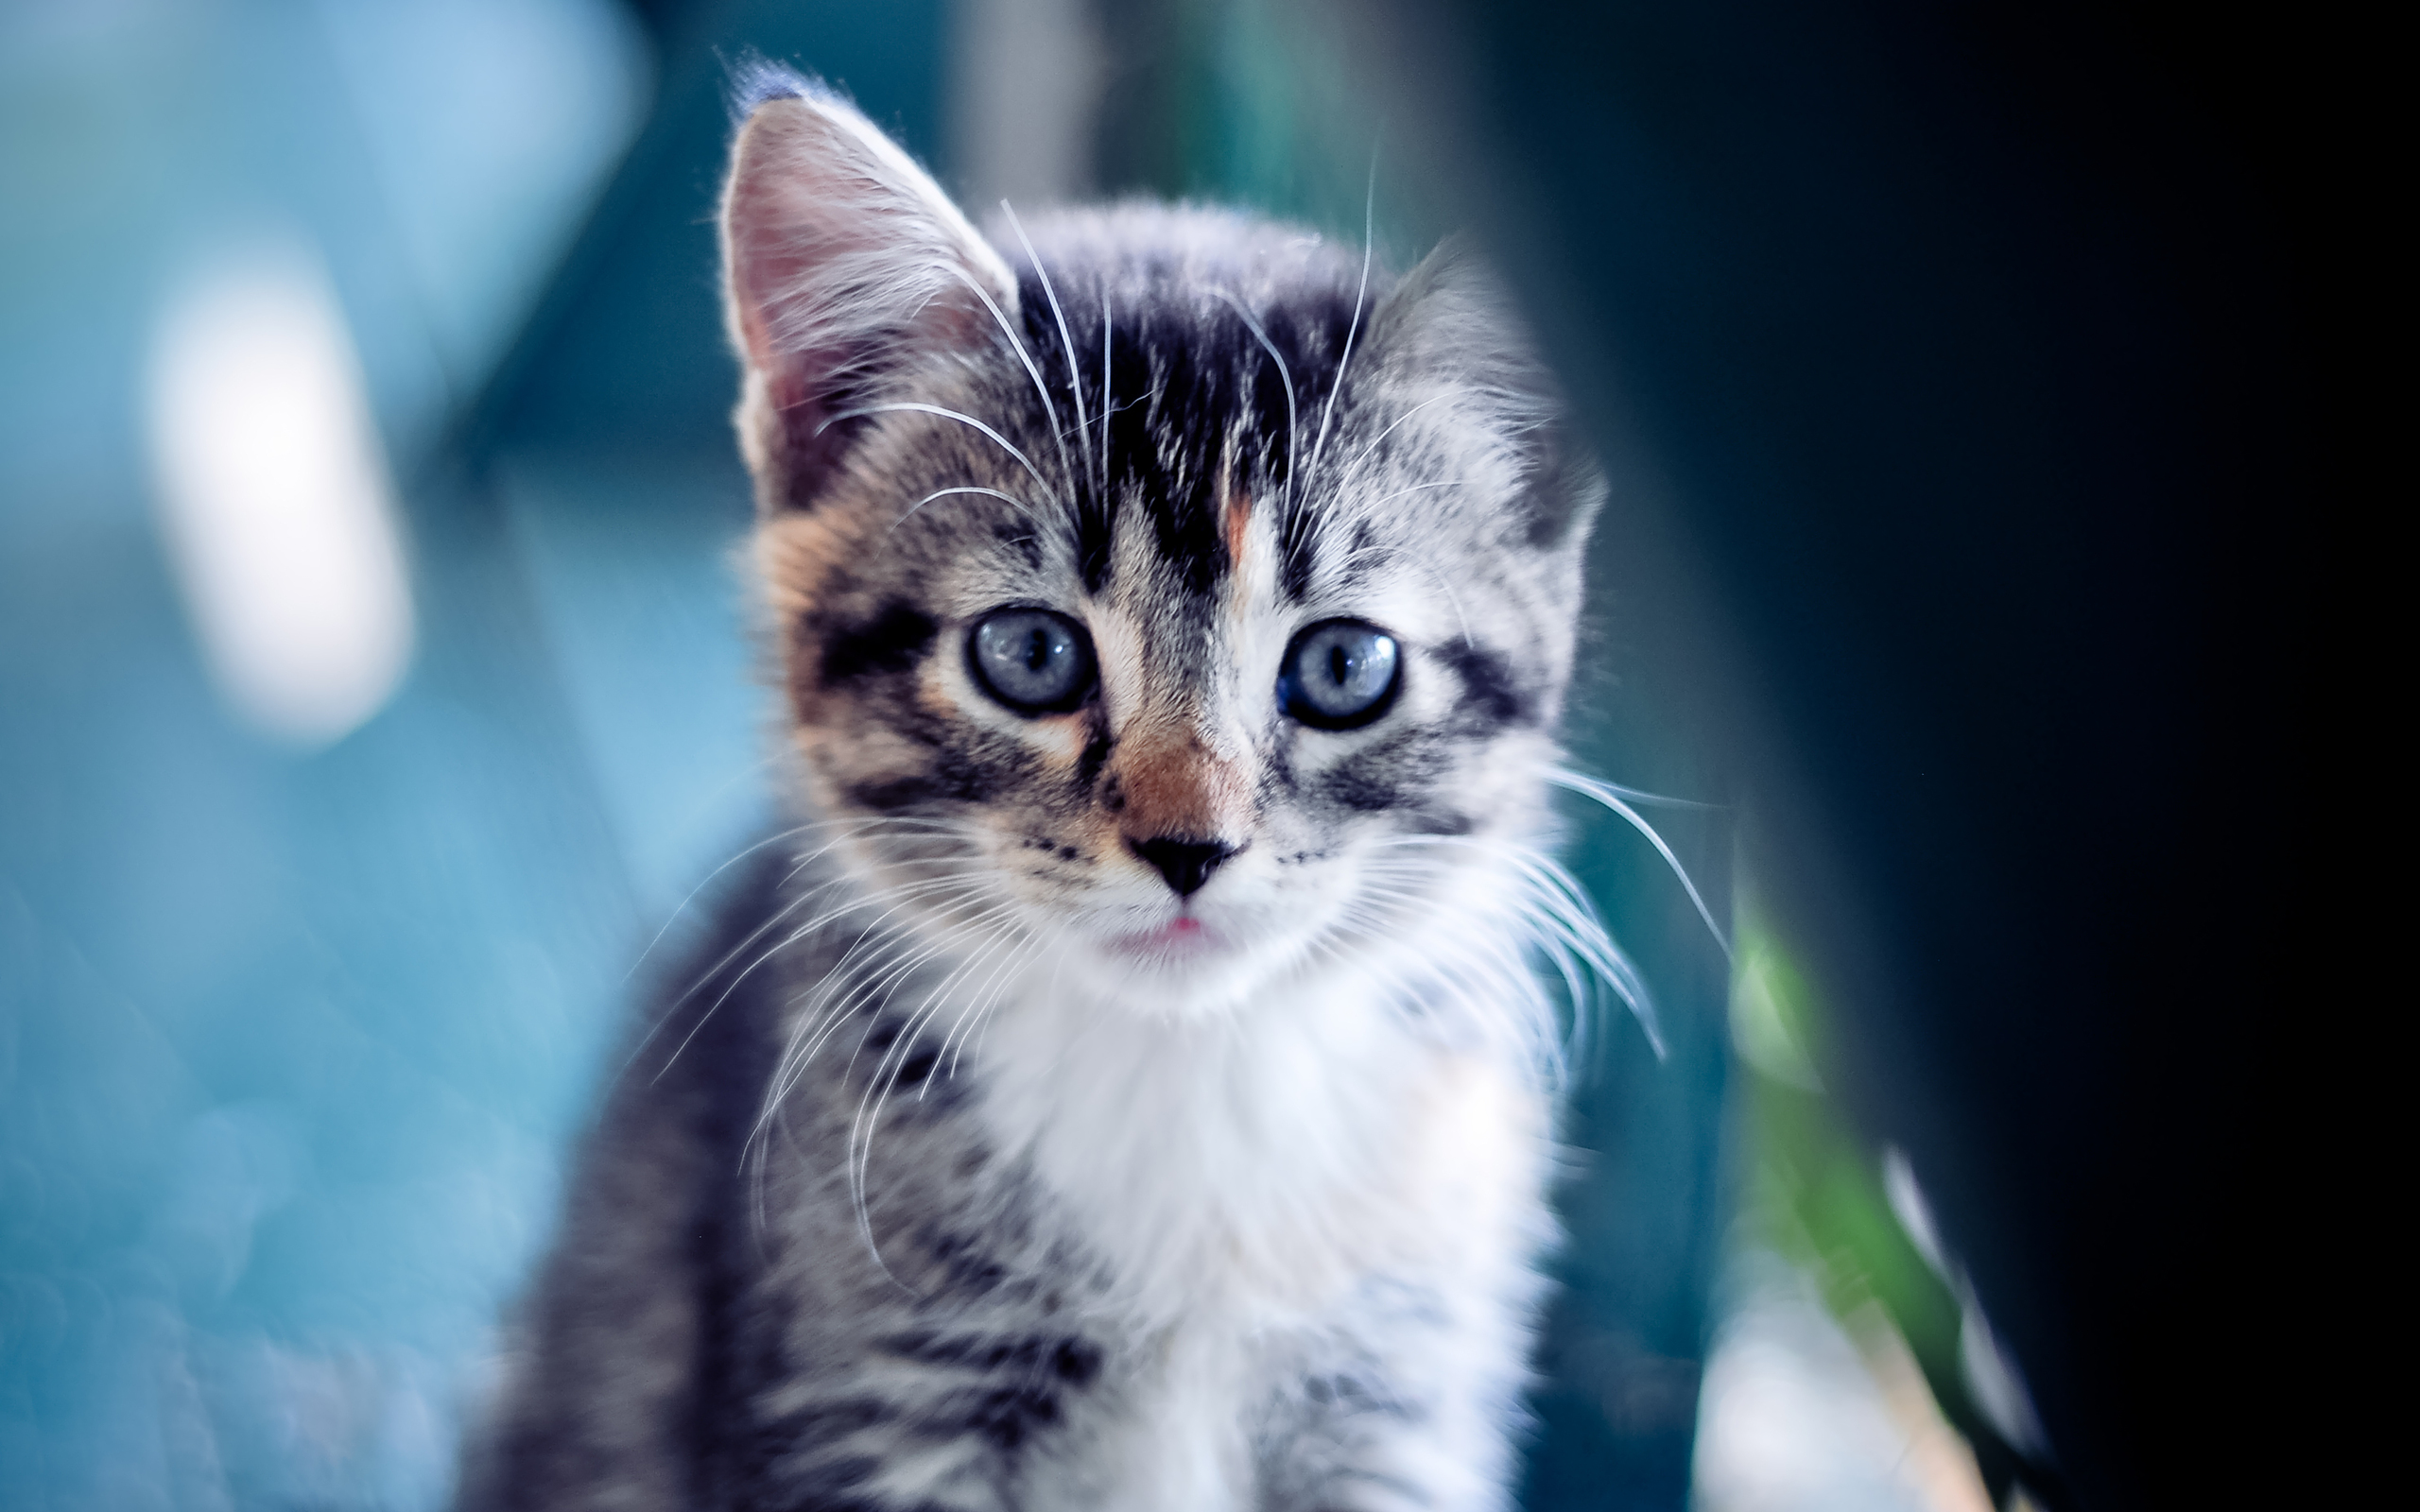 Cute kitten backgrounds